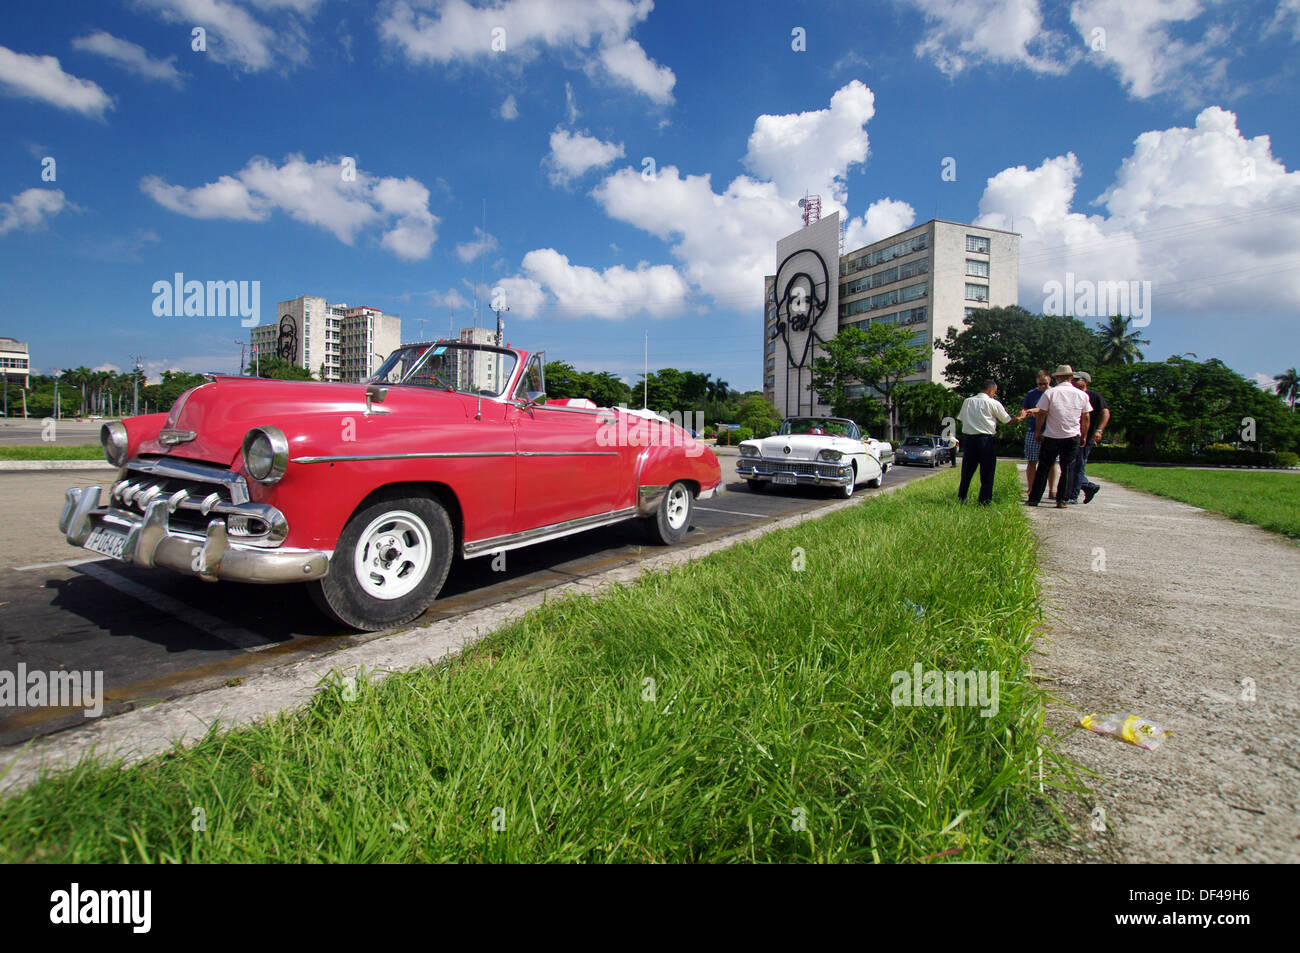 Vintage convertible parked in Plaza de la Revolución - Havana, Cuba Stock Photo